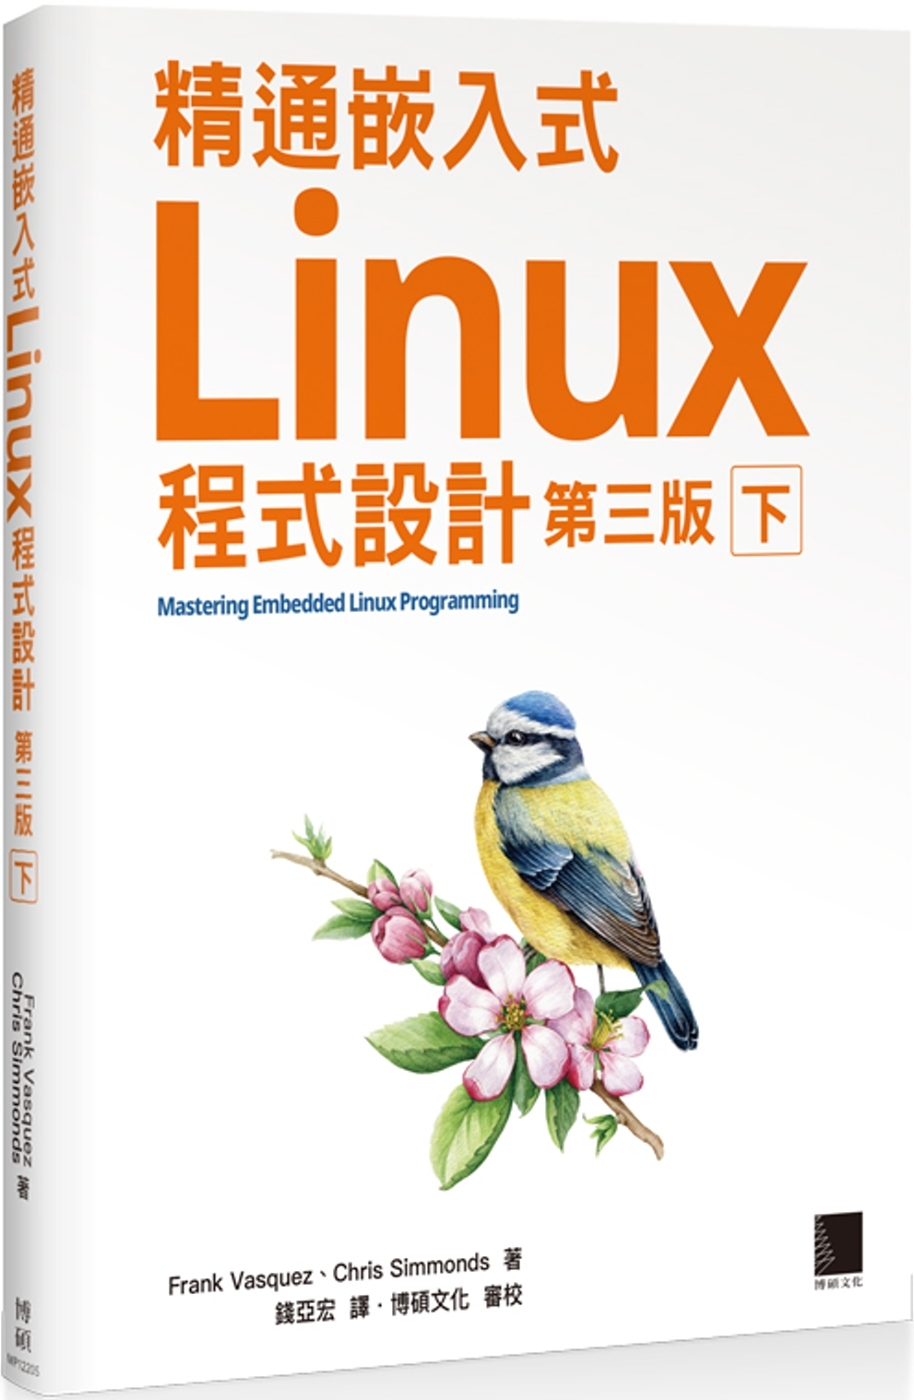 精通嵌入式Linux程式設計(第三版)(下)